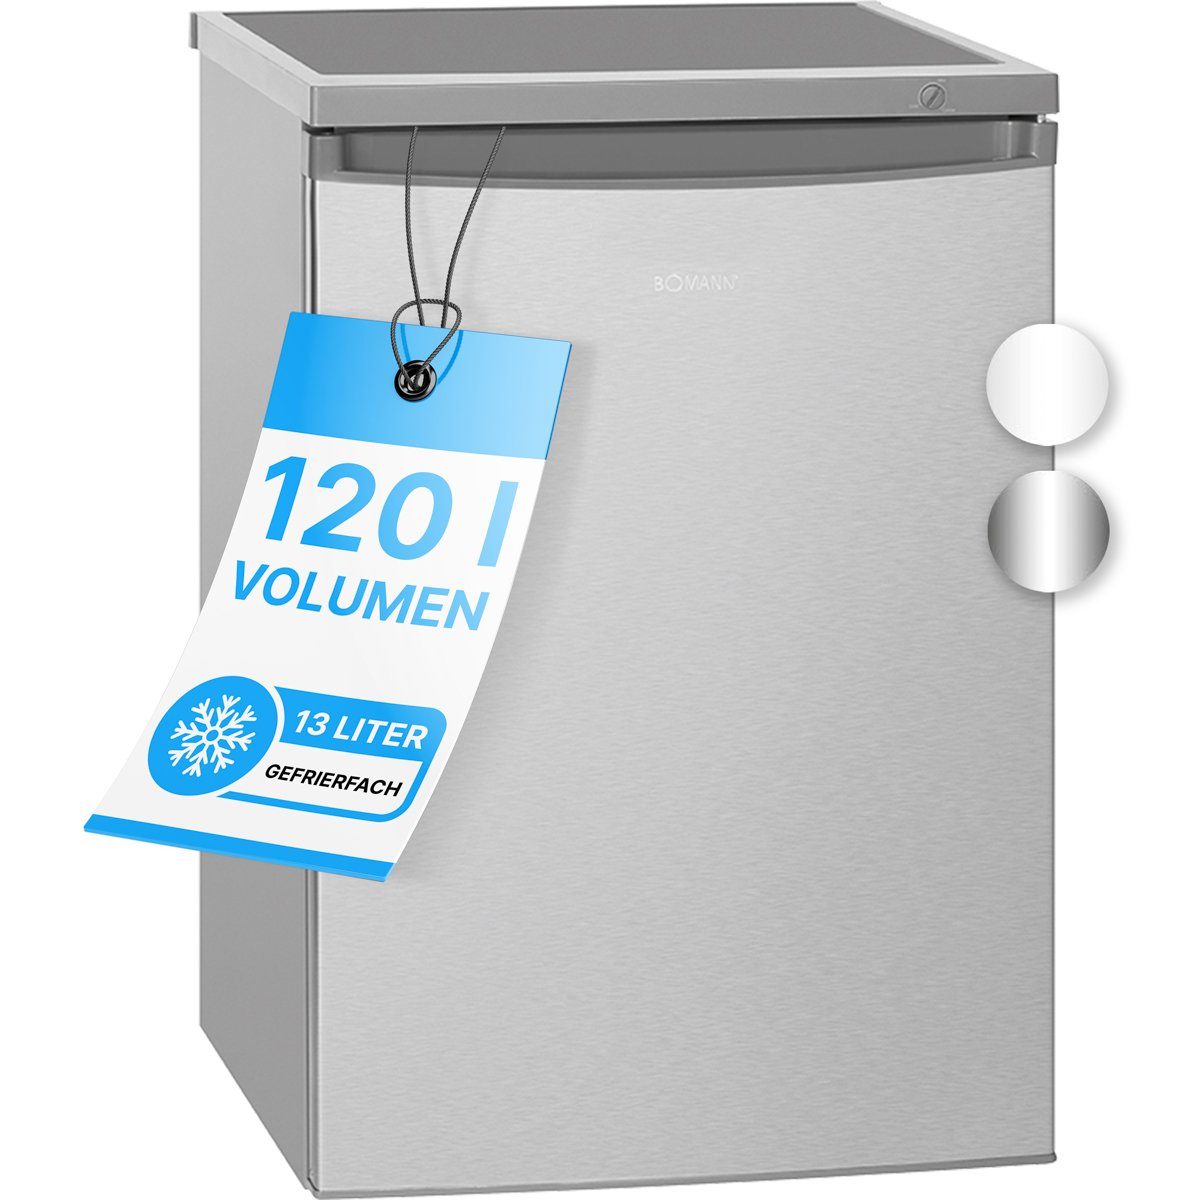 BOMANN Kühlschrank KS 2184 ix, 84.5 cm hoch, 56 cm breit, mit Gefrierfach, 120L Nutzinhalt